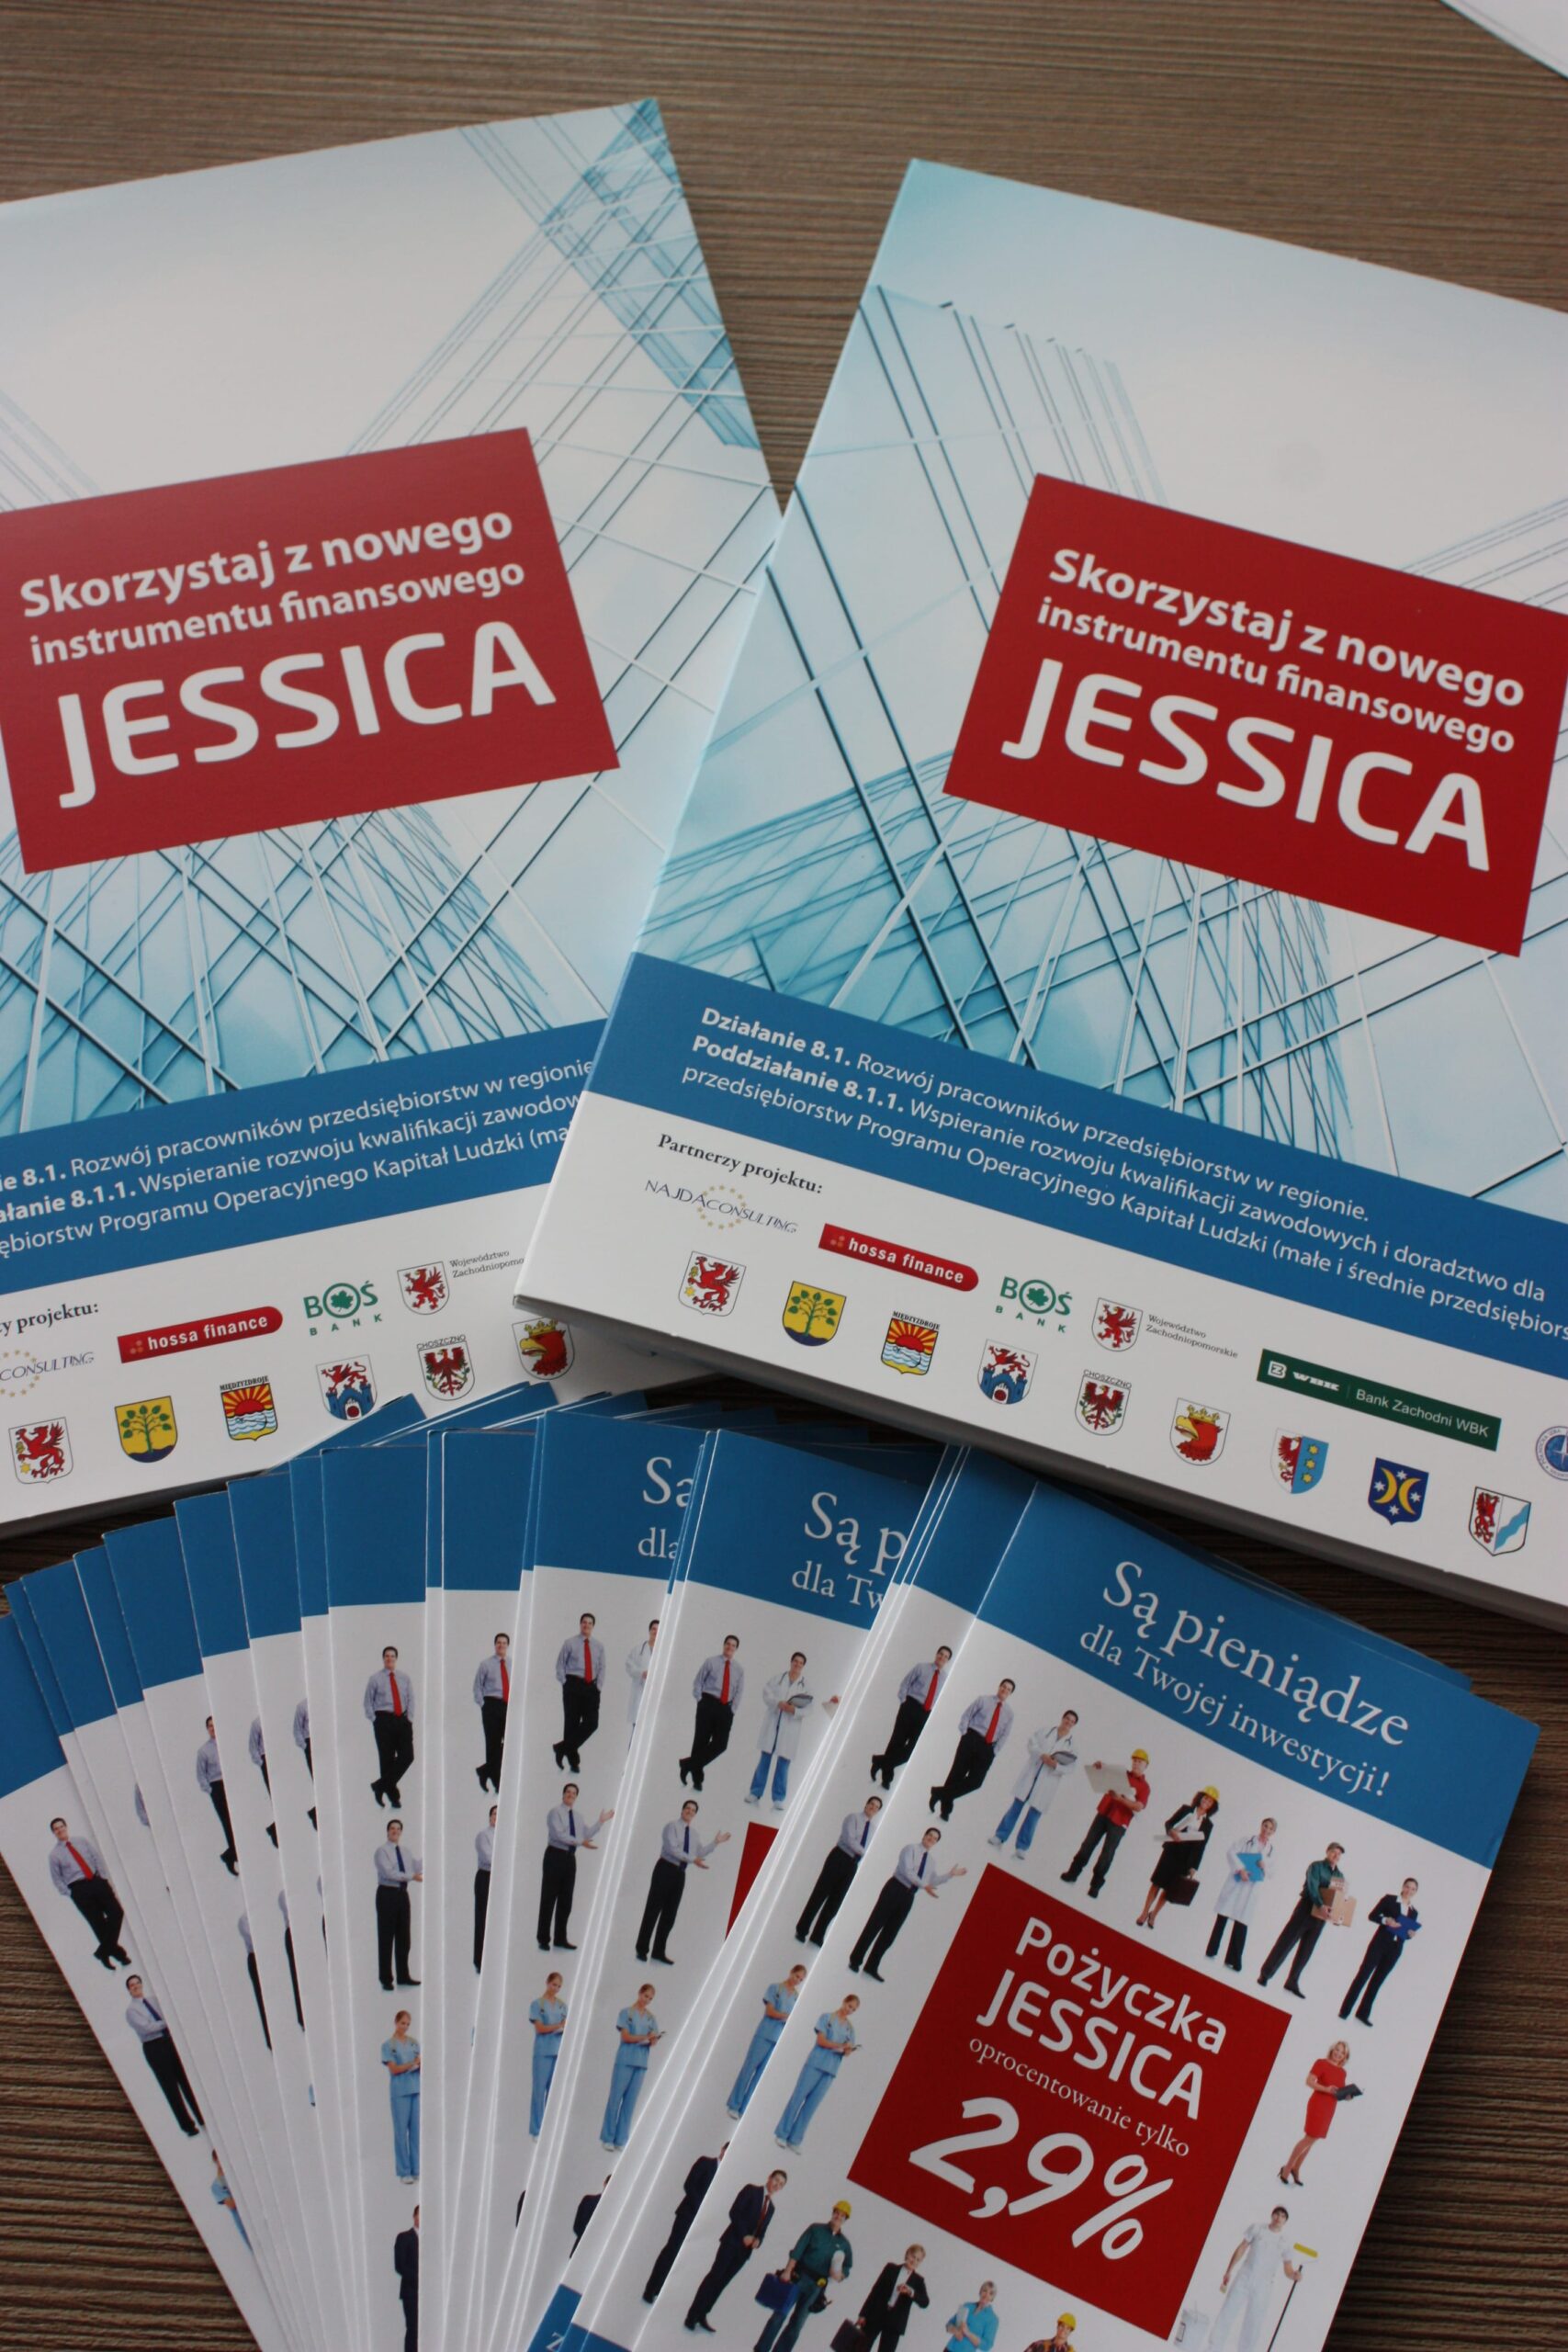 Forum Inwestycyjne Jessica – Druga konferencja otwierająca projekt 4×4 biznes